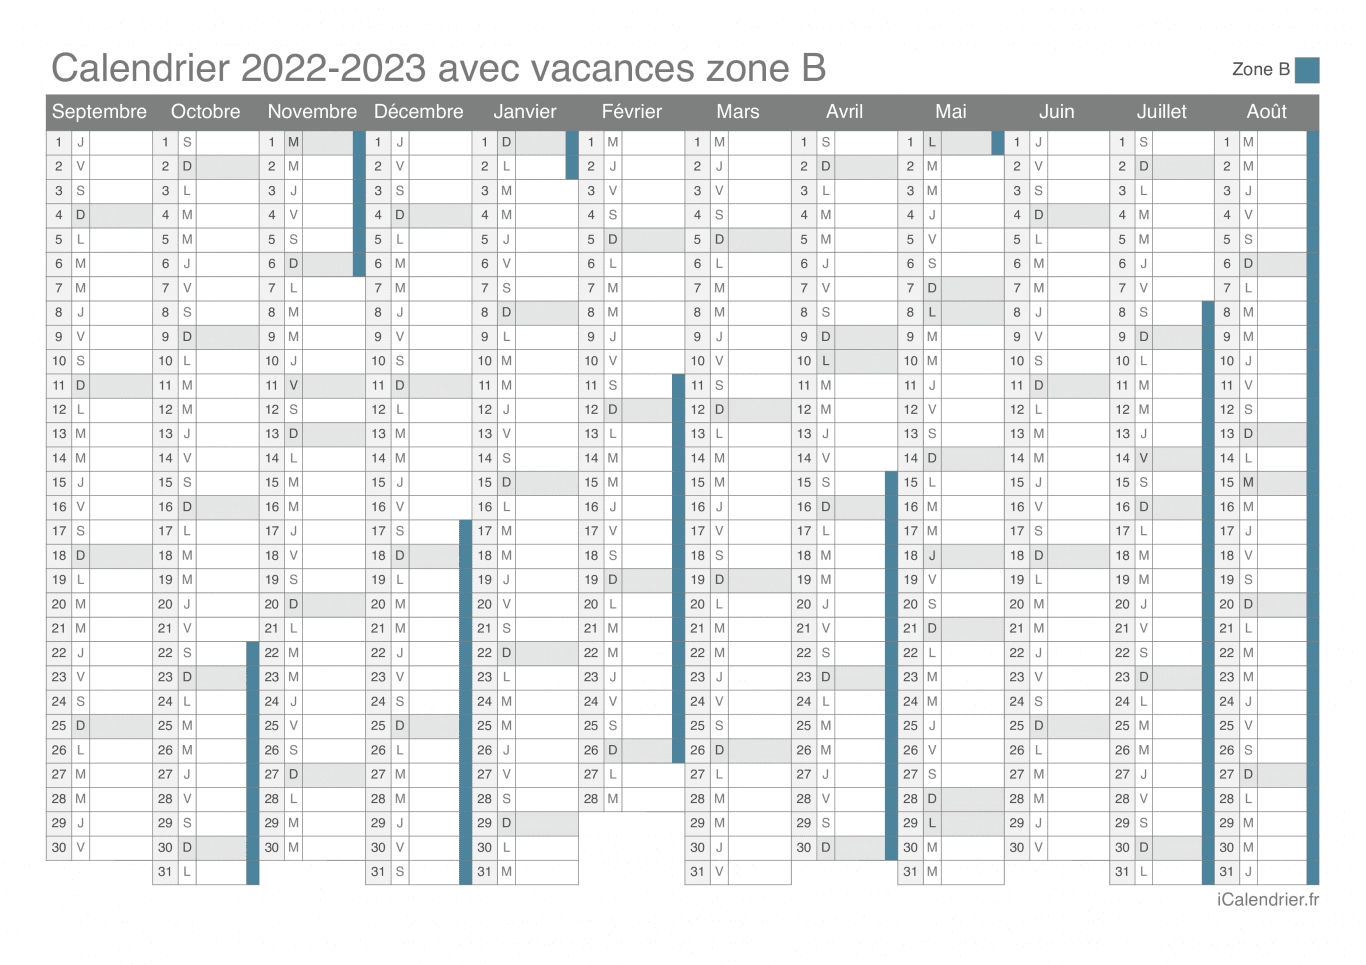 Calendrier des vacances scolaires 2022-2023 de la zone B